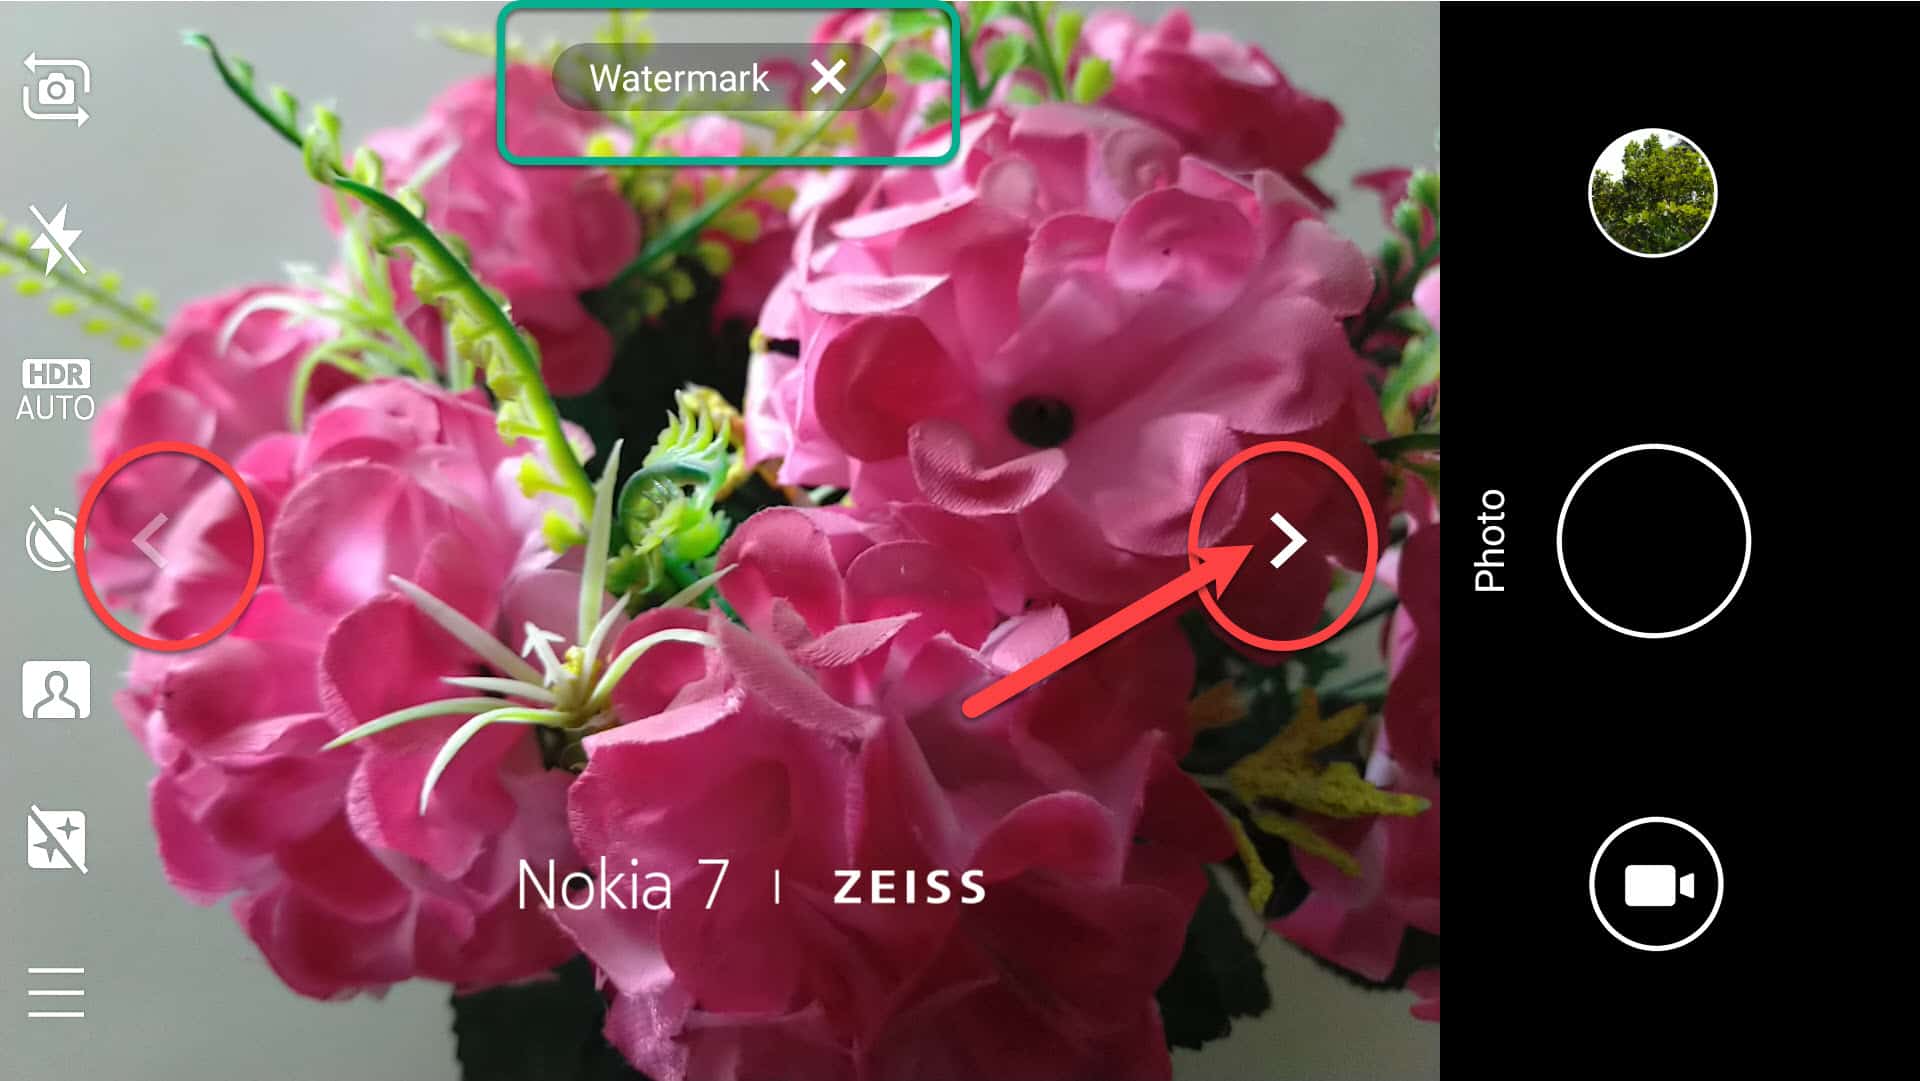 Nokia 7 camera